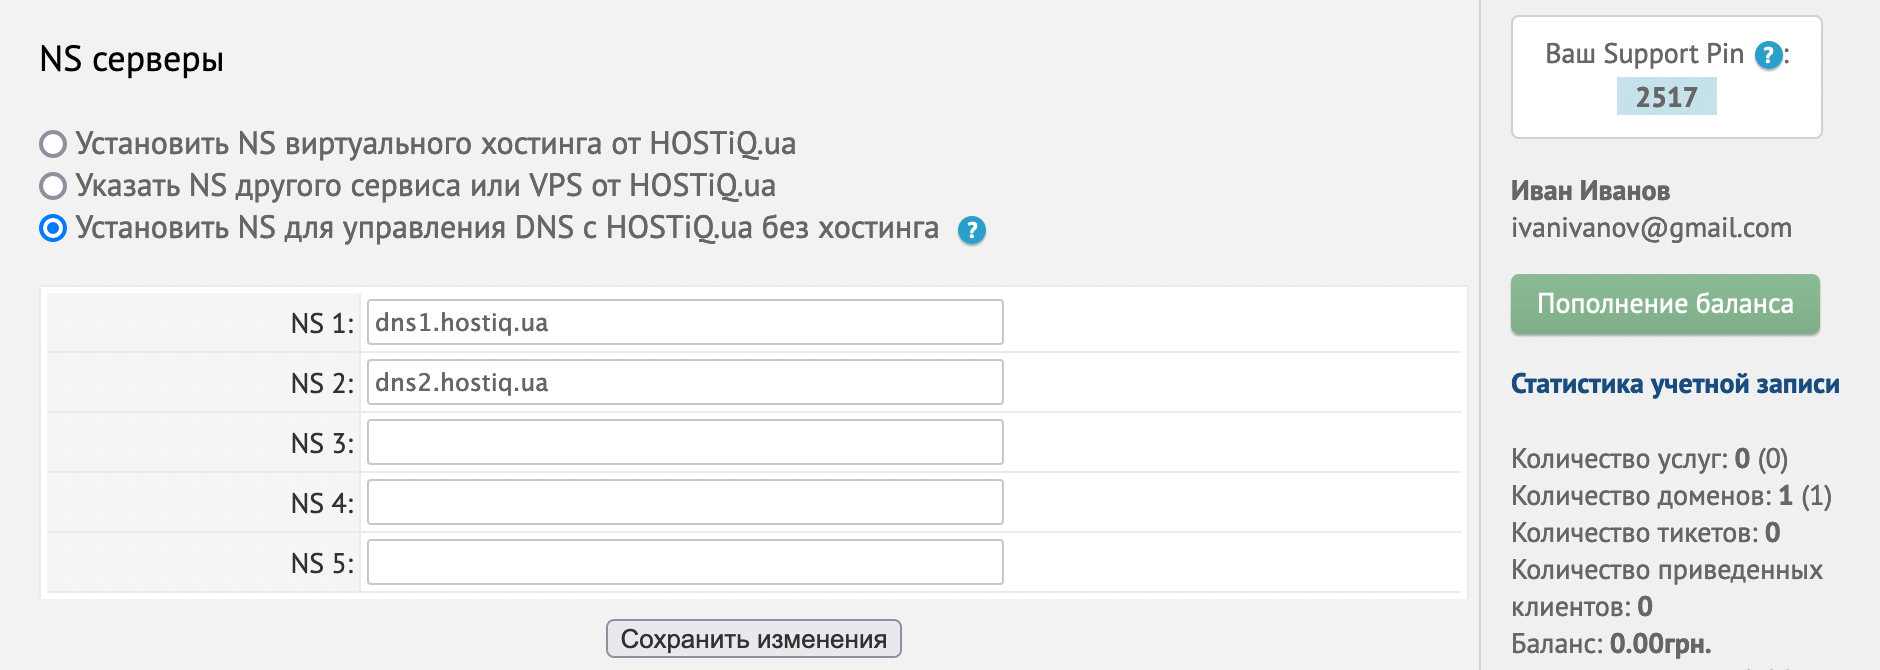 Вариант «Установить NS для управления DNS с HOSTiQ.ua без хостинга» в блоке «NS серверы» в параметрах домена